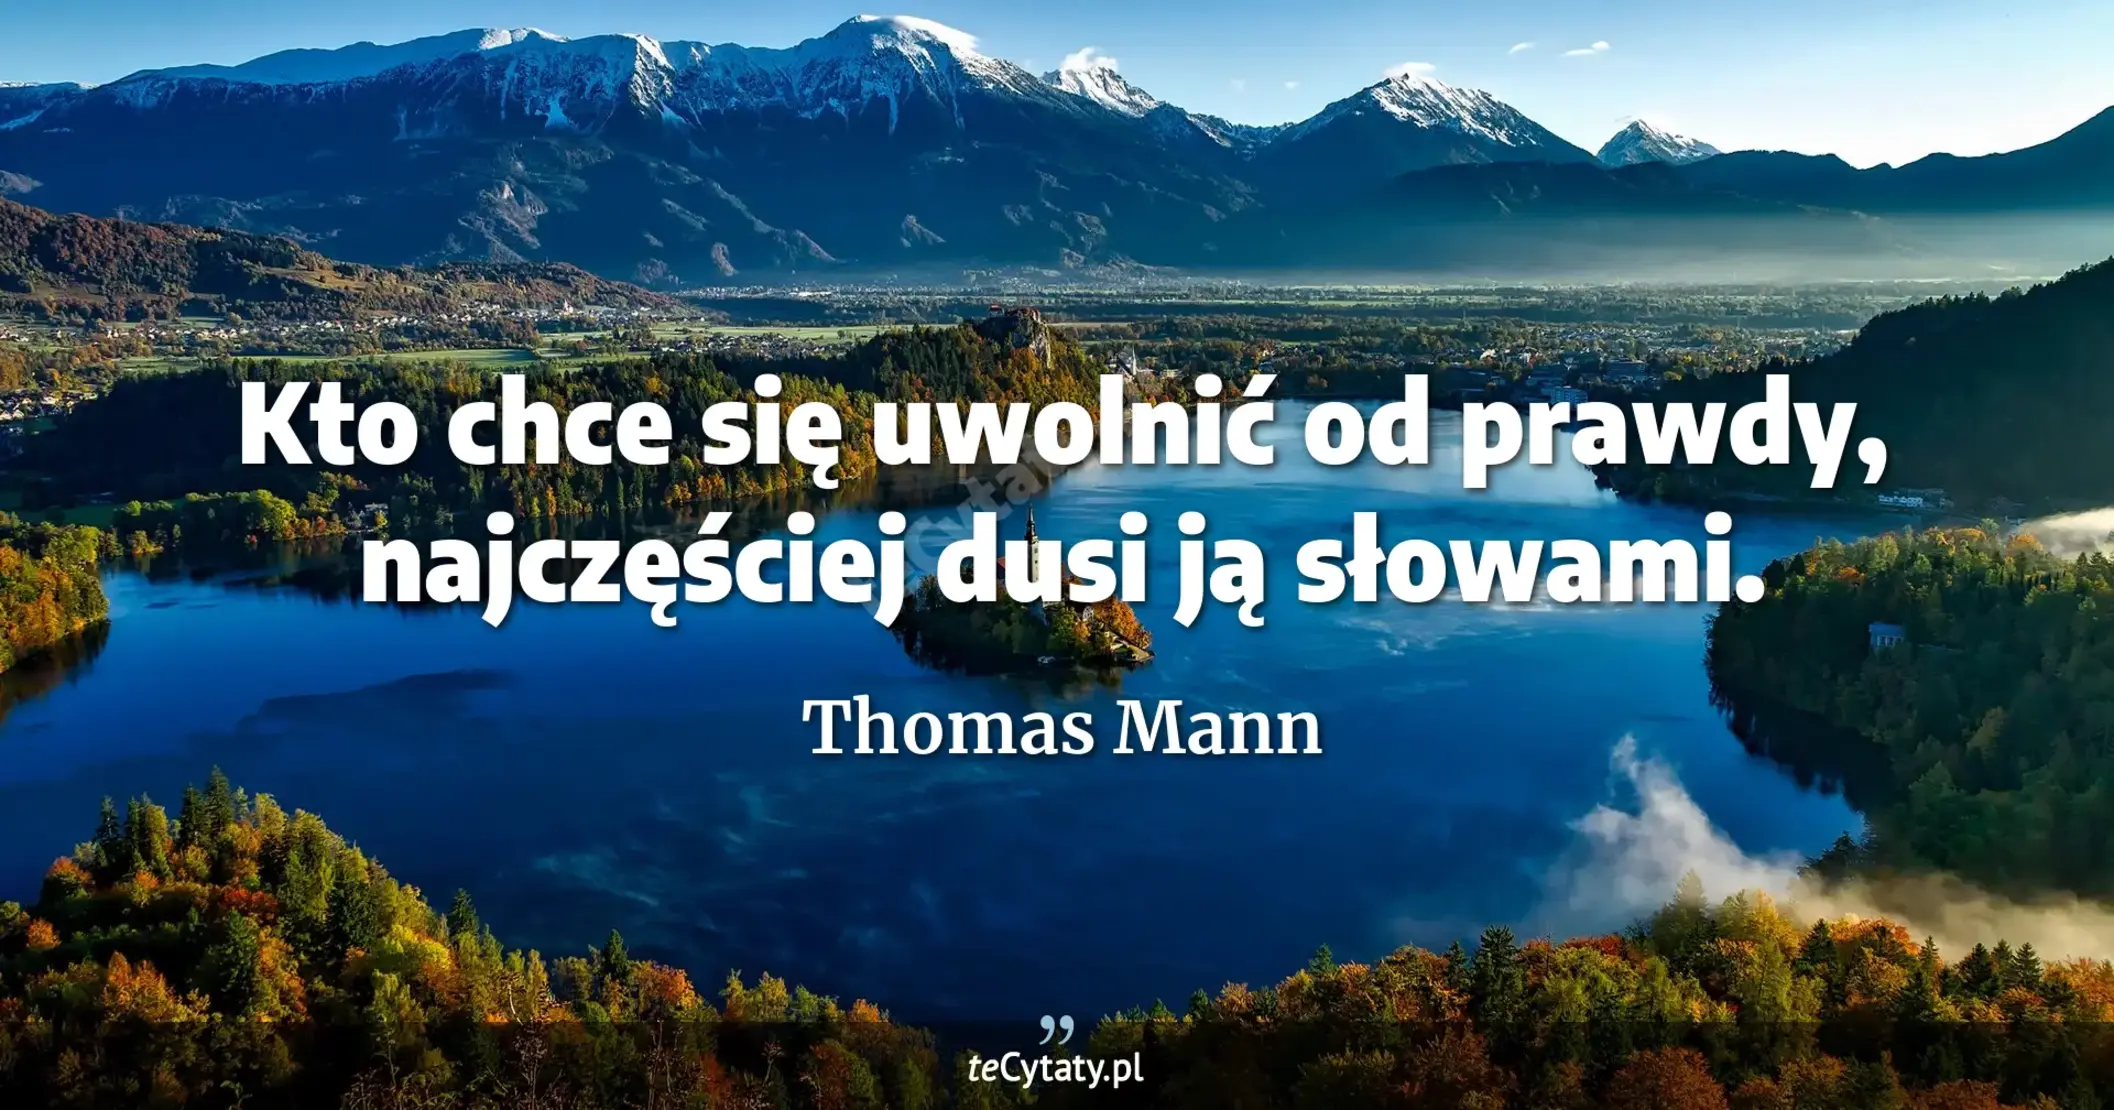 Kto chce się uwolnić od prawdy, najczęściej dusi ją słowami. - Thomas Mann